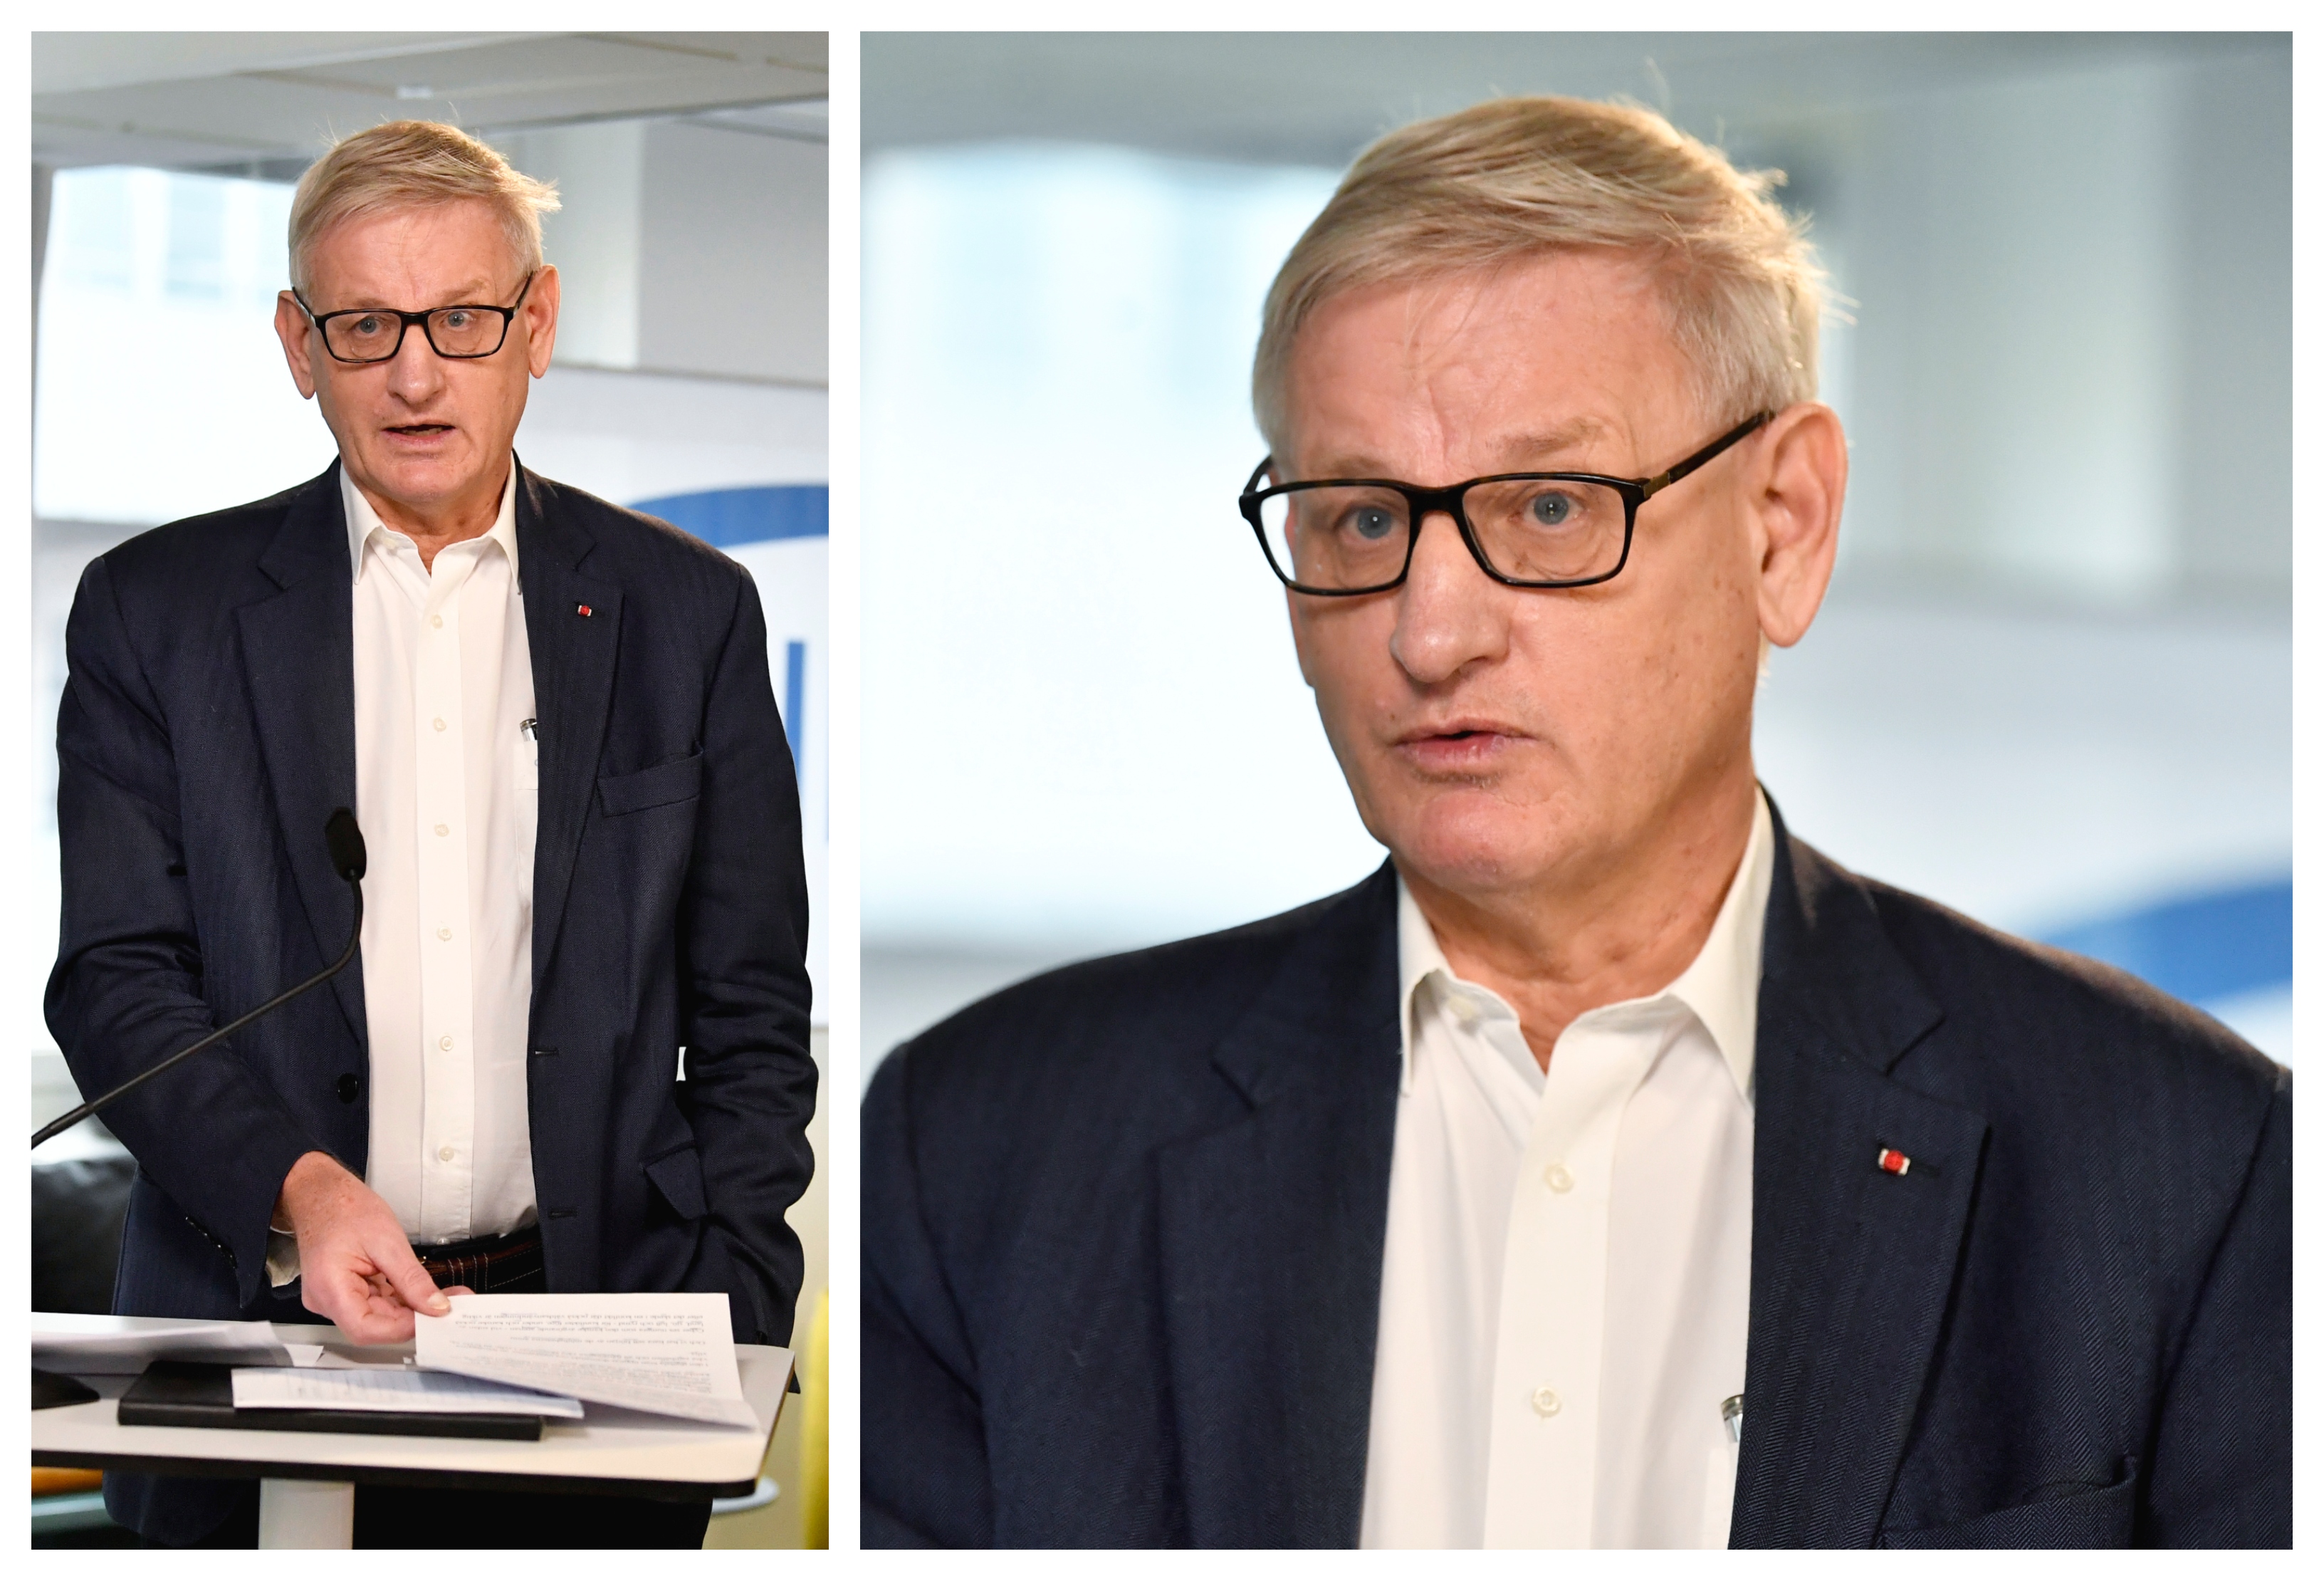 Hur mycket pengar tjänar egentligen Carl Bildt? Nyheter24 har svaret!